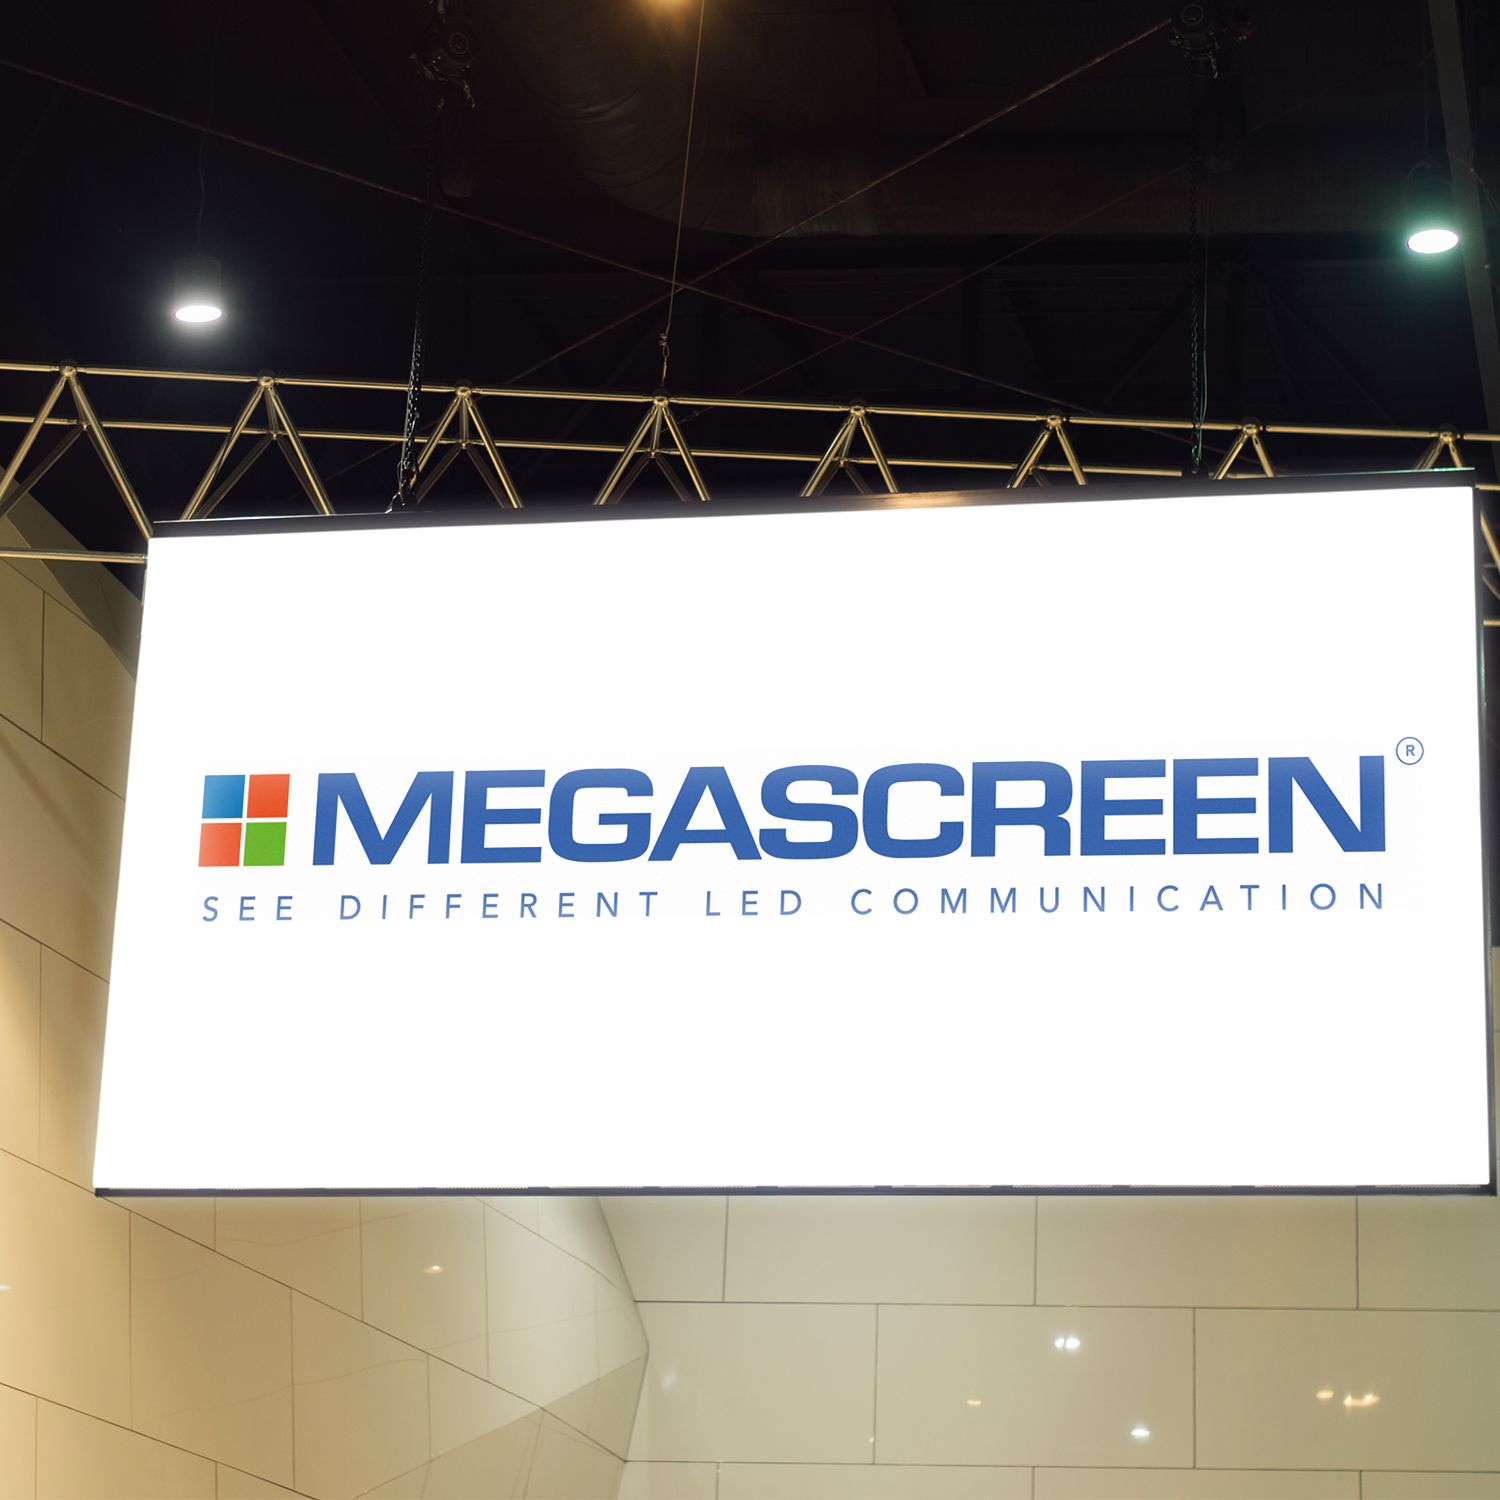 Megascreen ledwall